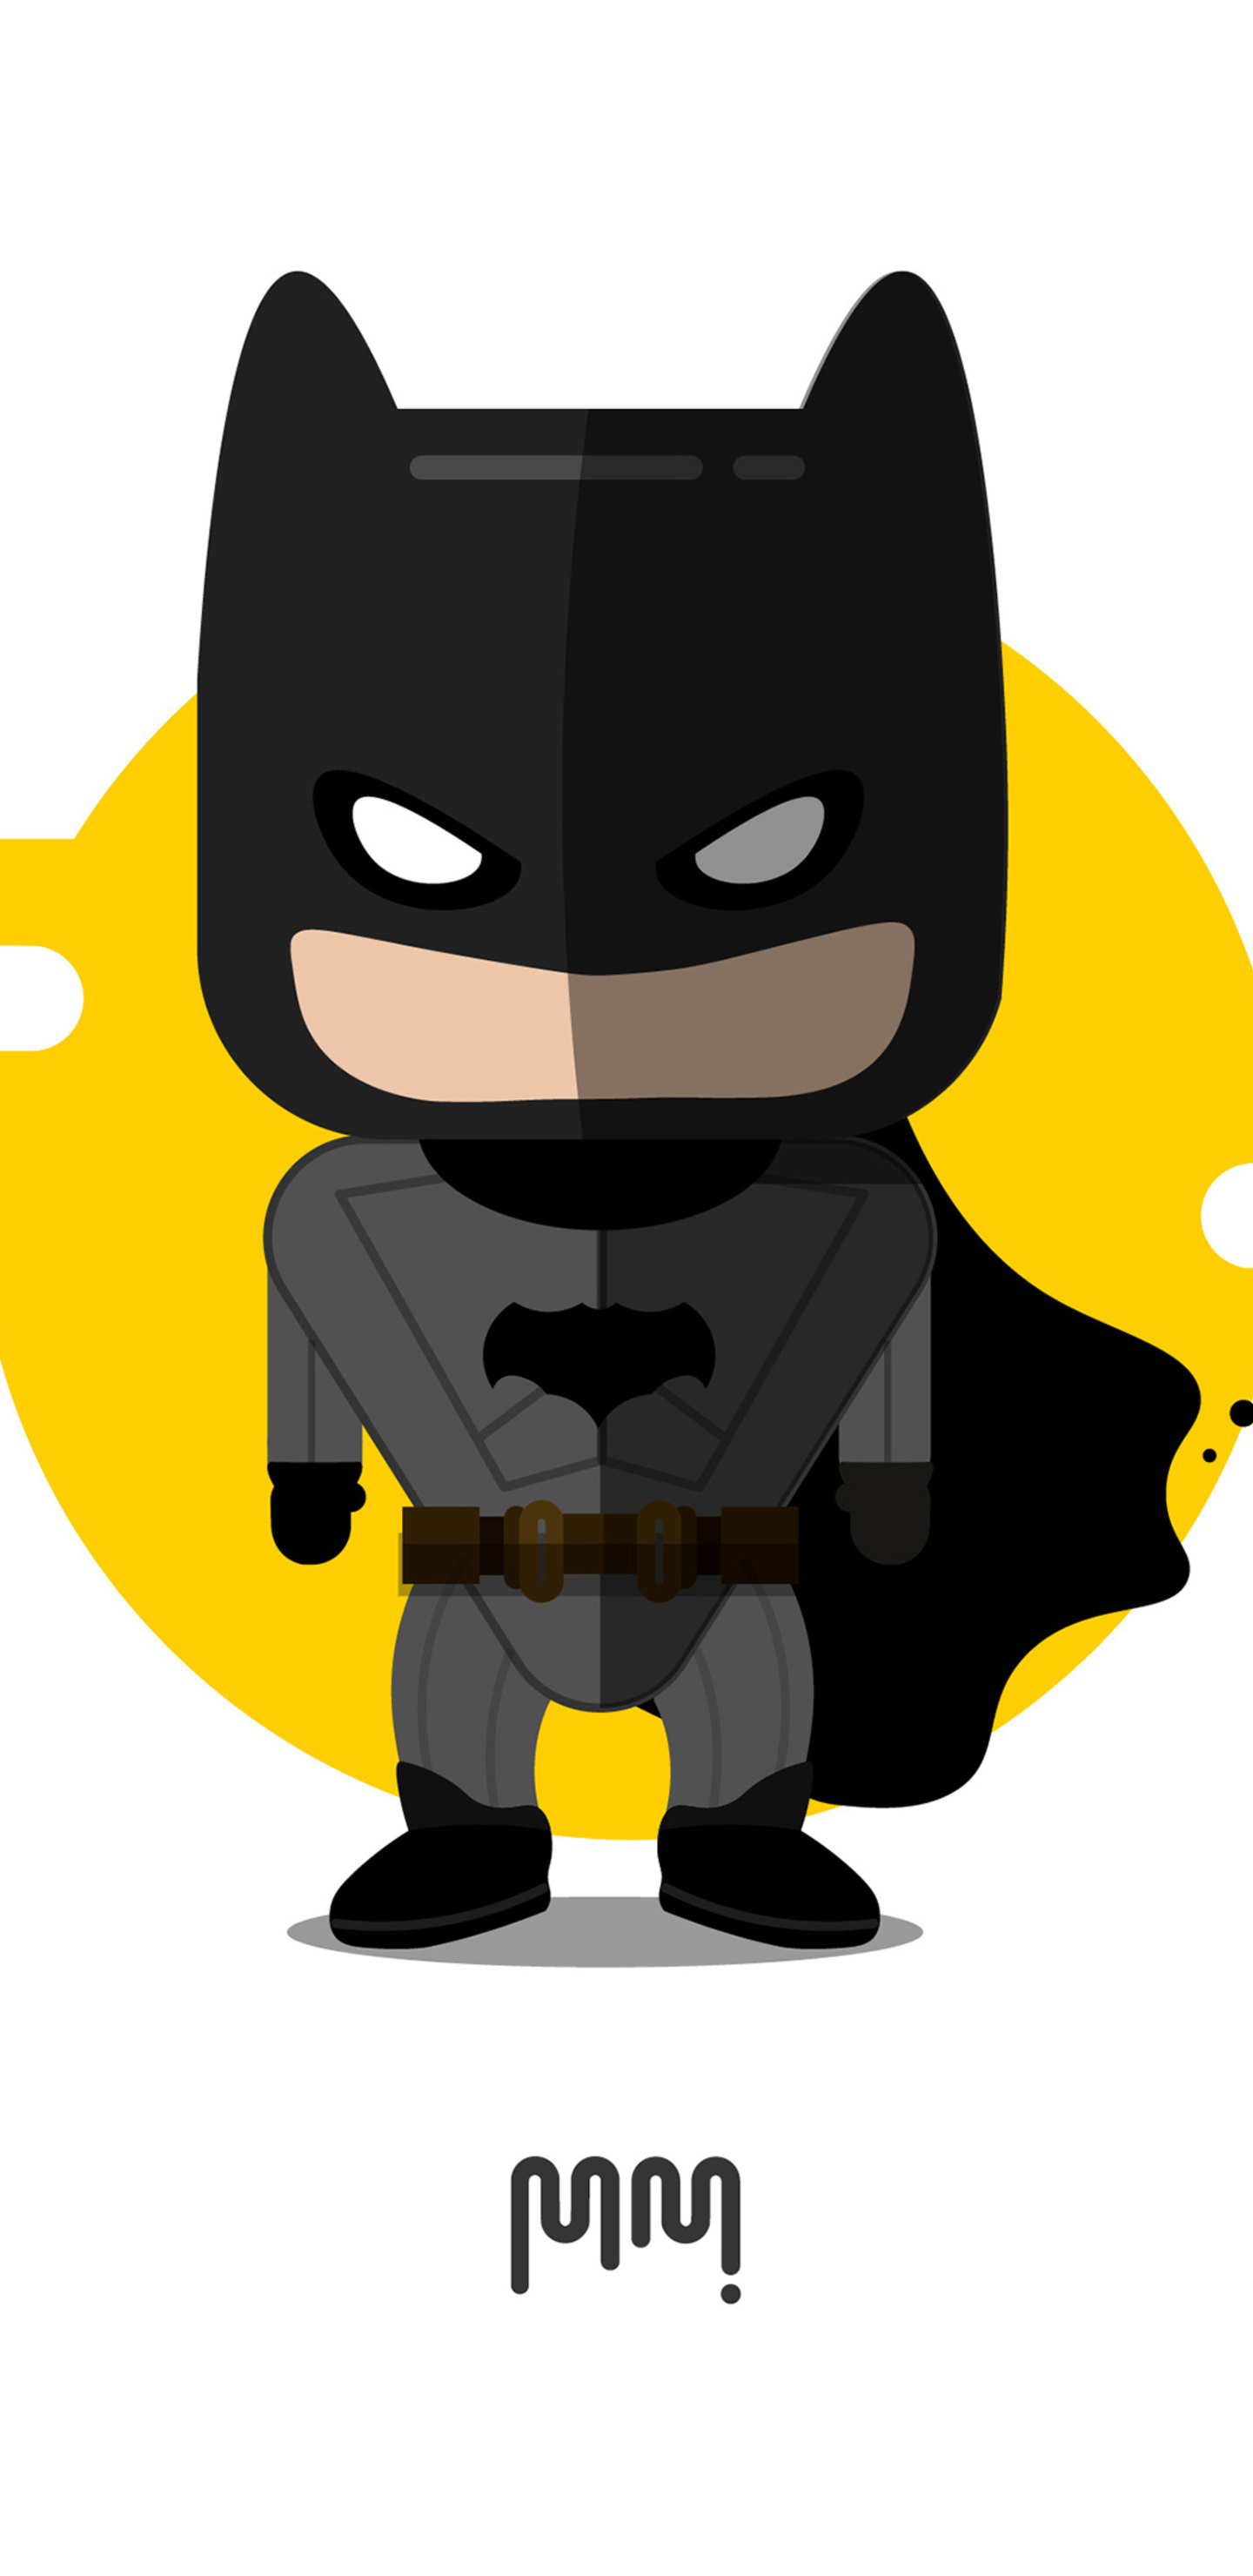 Batman hình nền: Fan của Batman à? Cùng tải hình nền về những trận đánh kịch tính của siêu anh hùng Gotham ngay hôm nay và làm mới màn hình điện thoại hoặc máy tính của bạn!